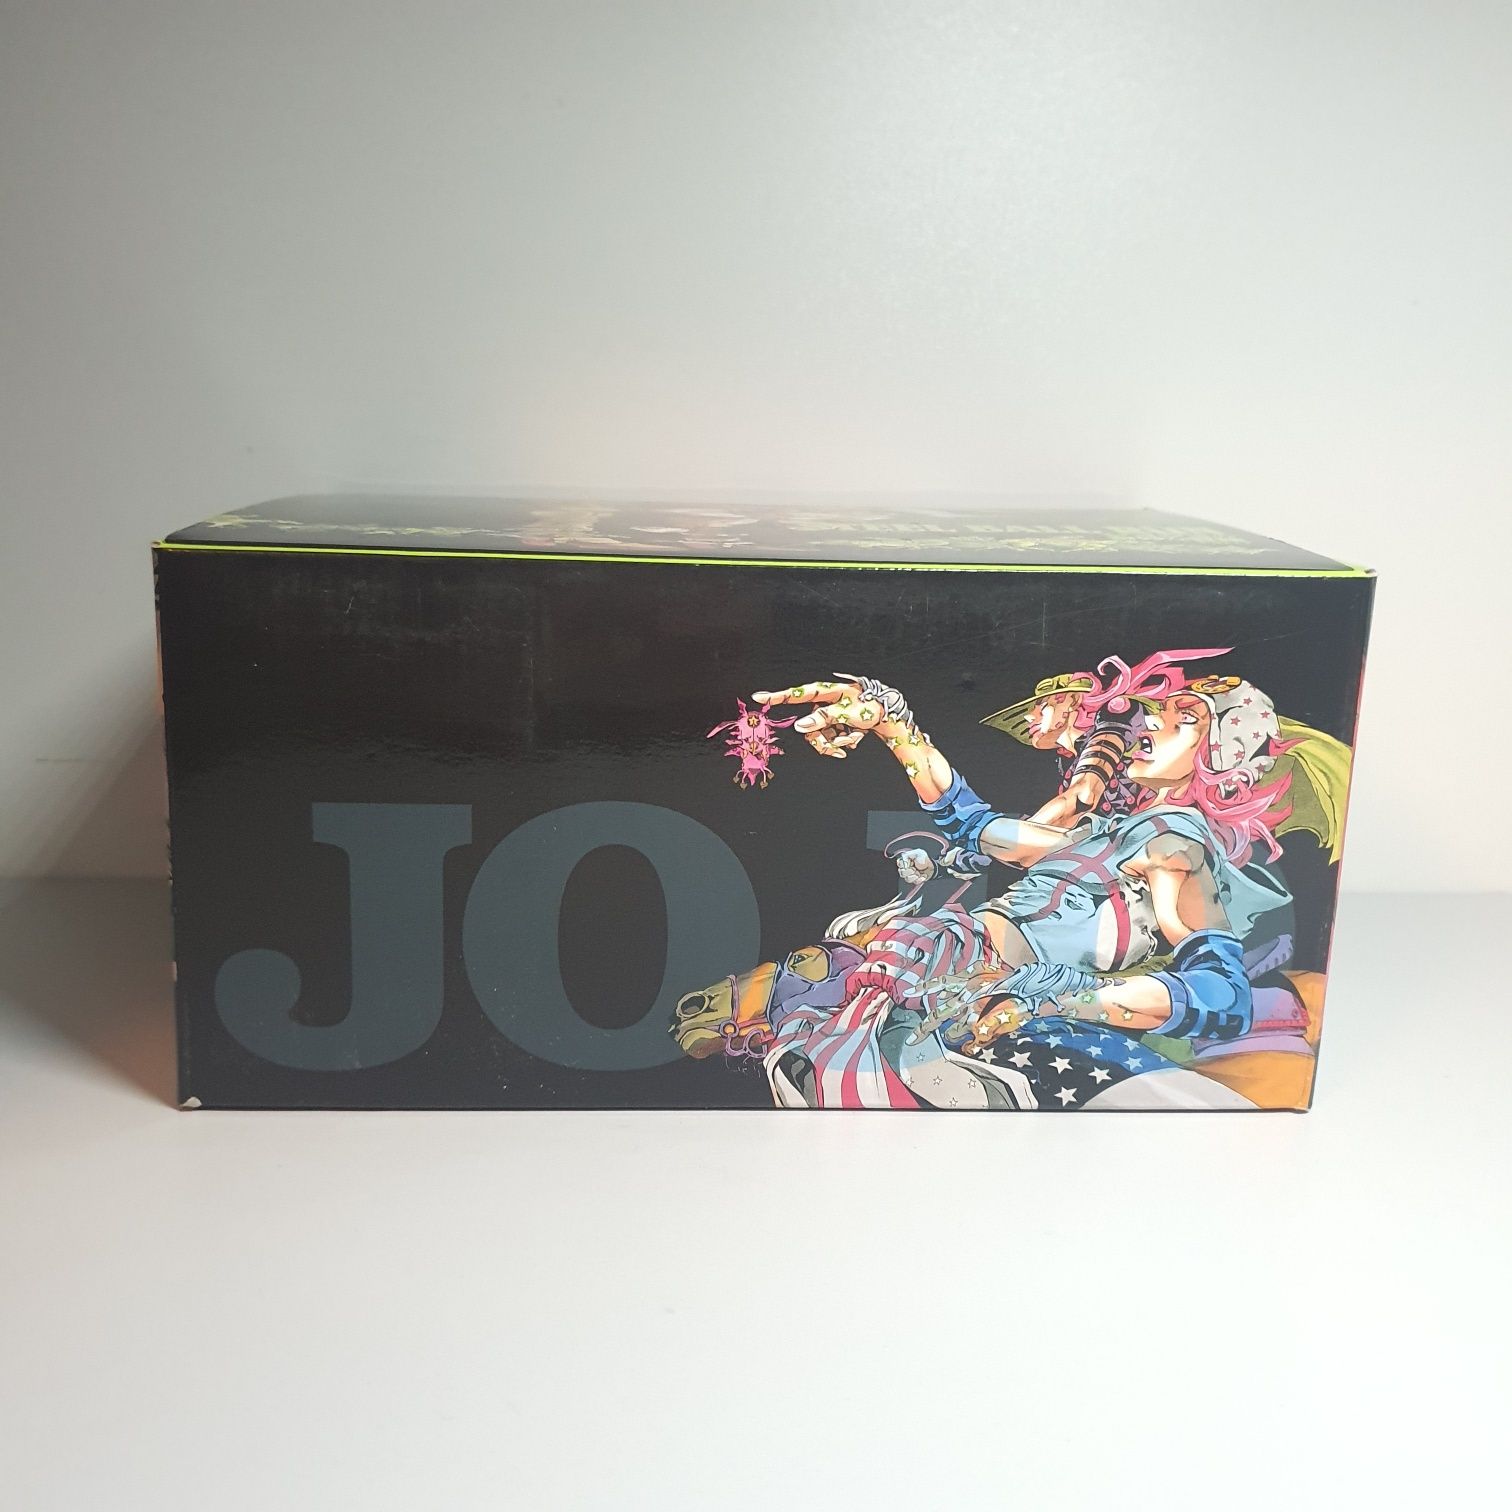 JoJo steel ball run box set w języku japońskim